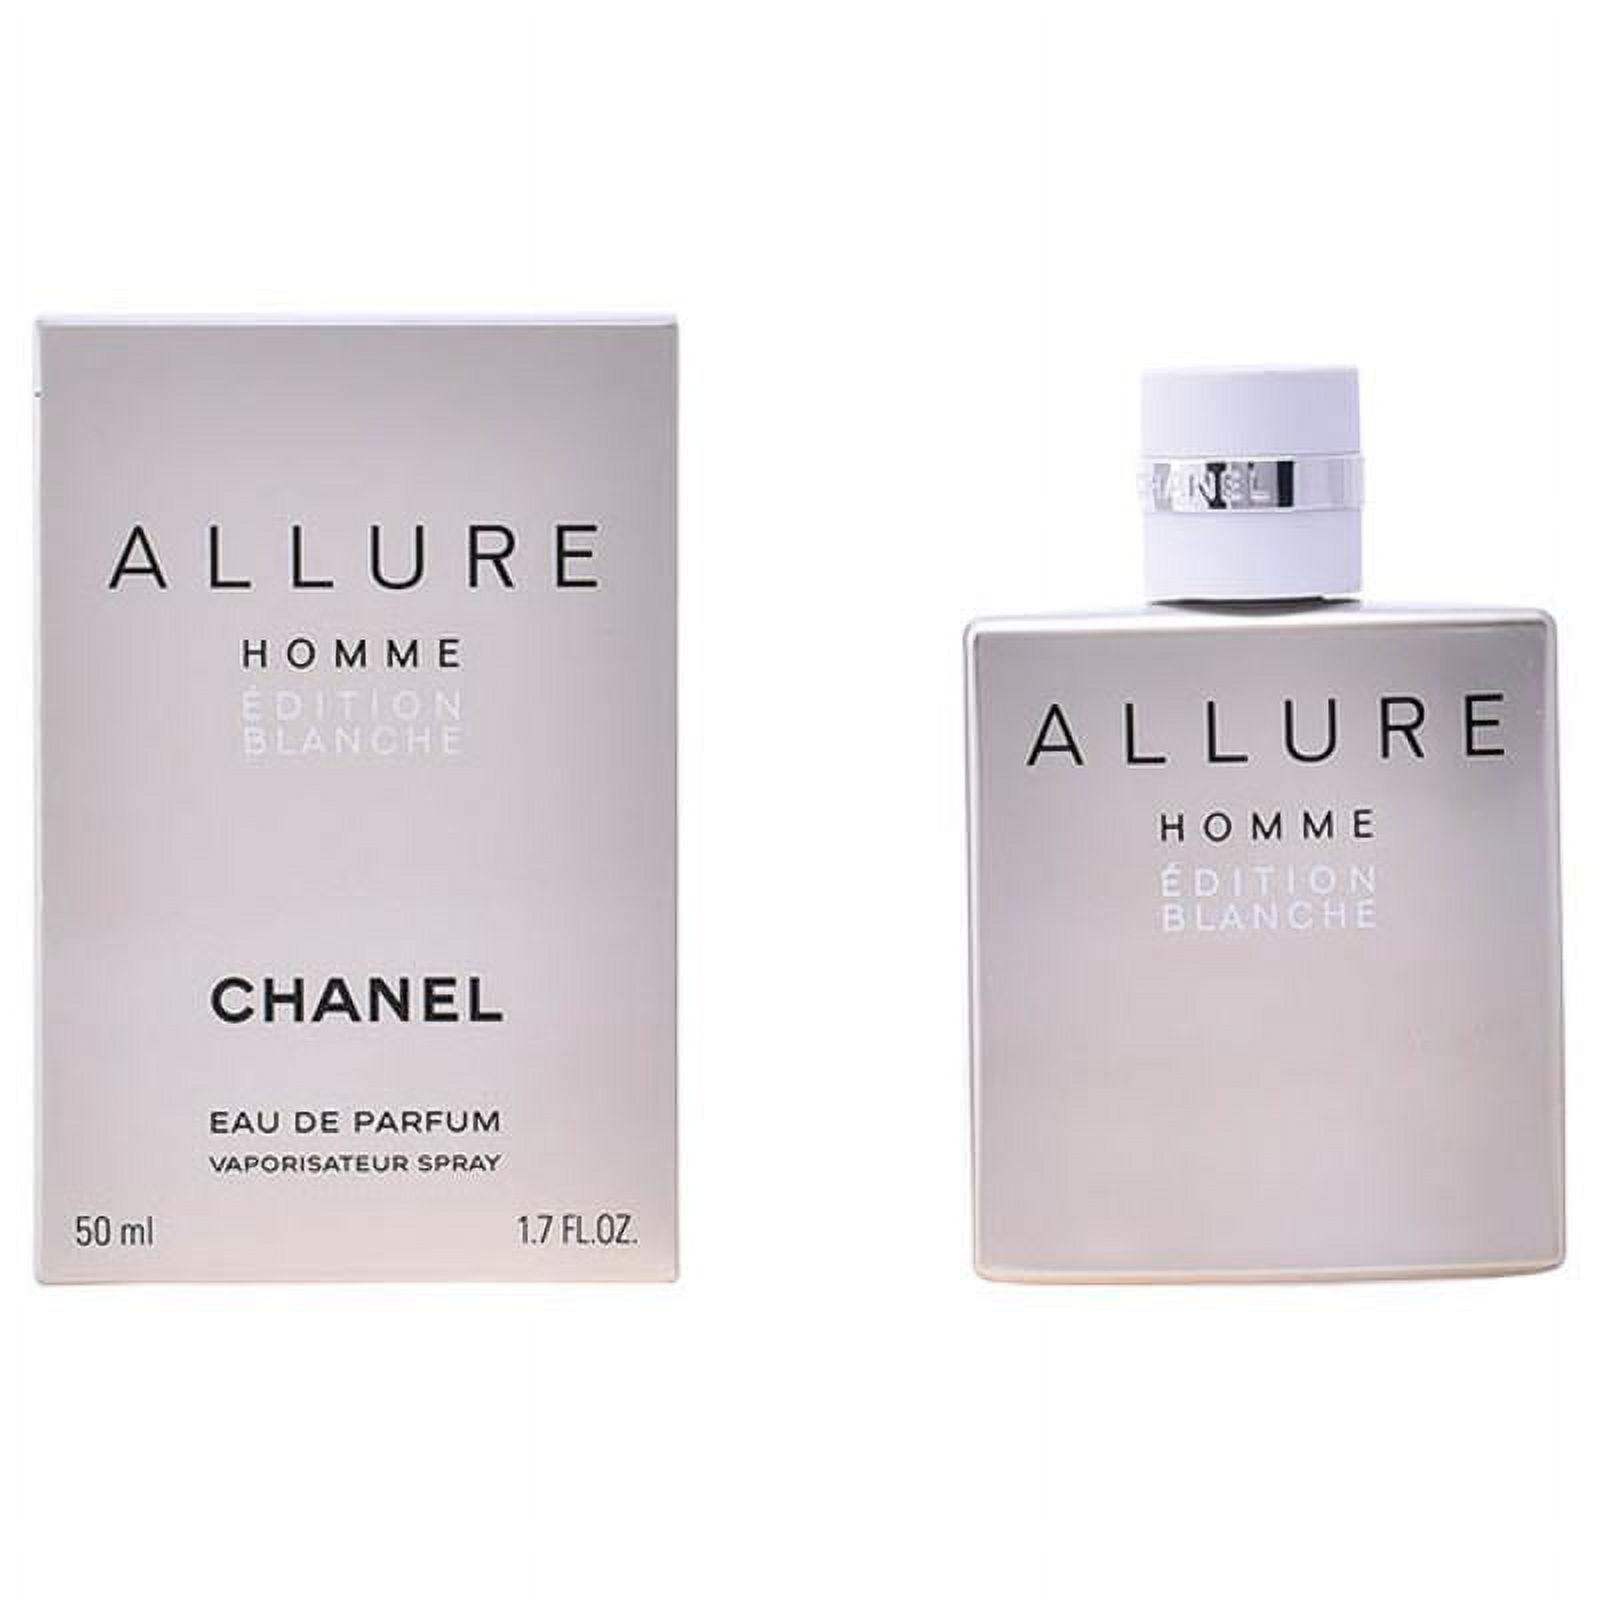 chanel allure edition blanche sample